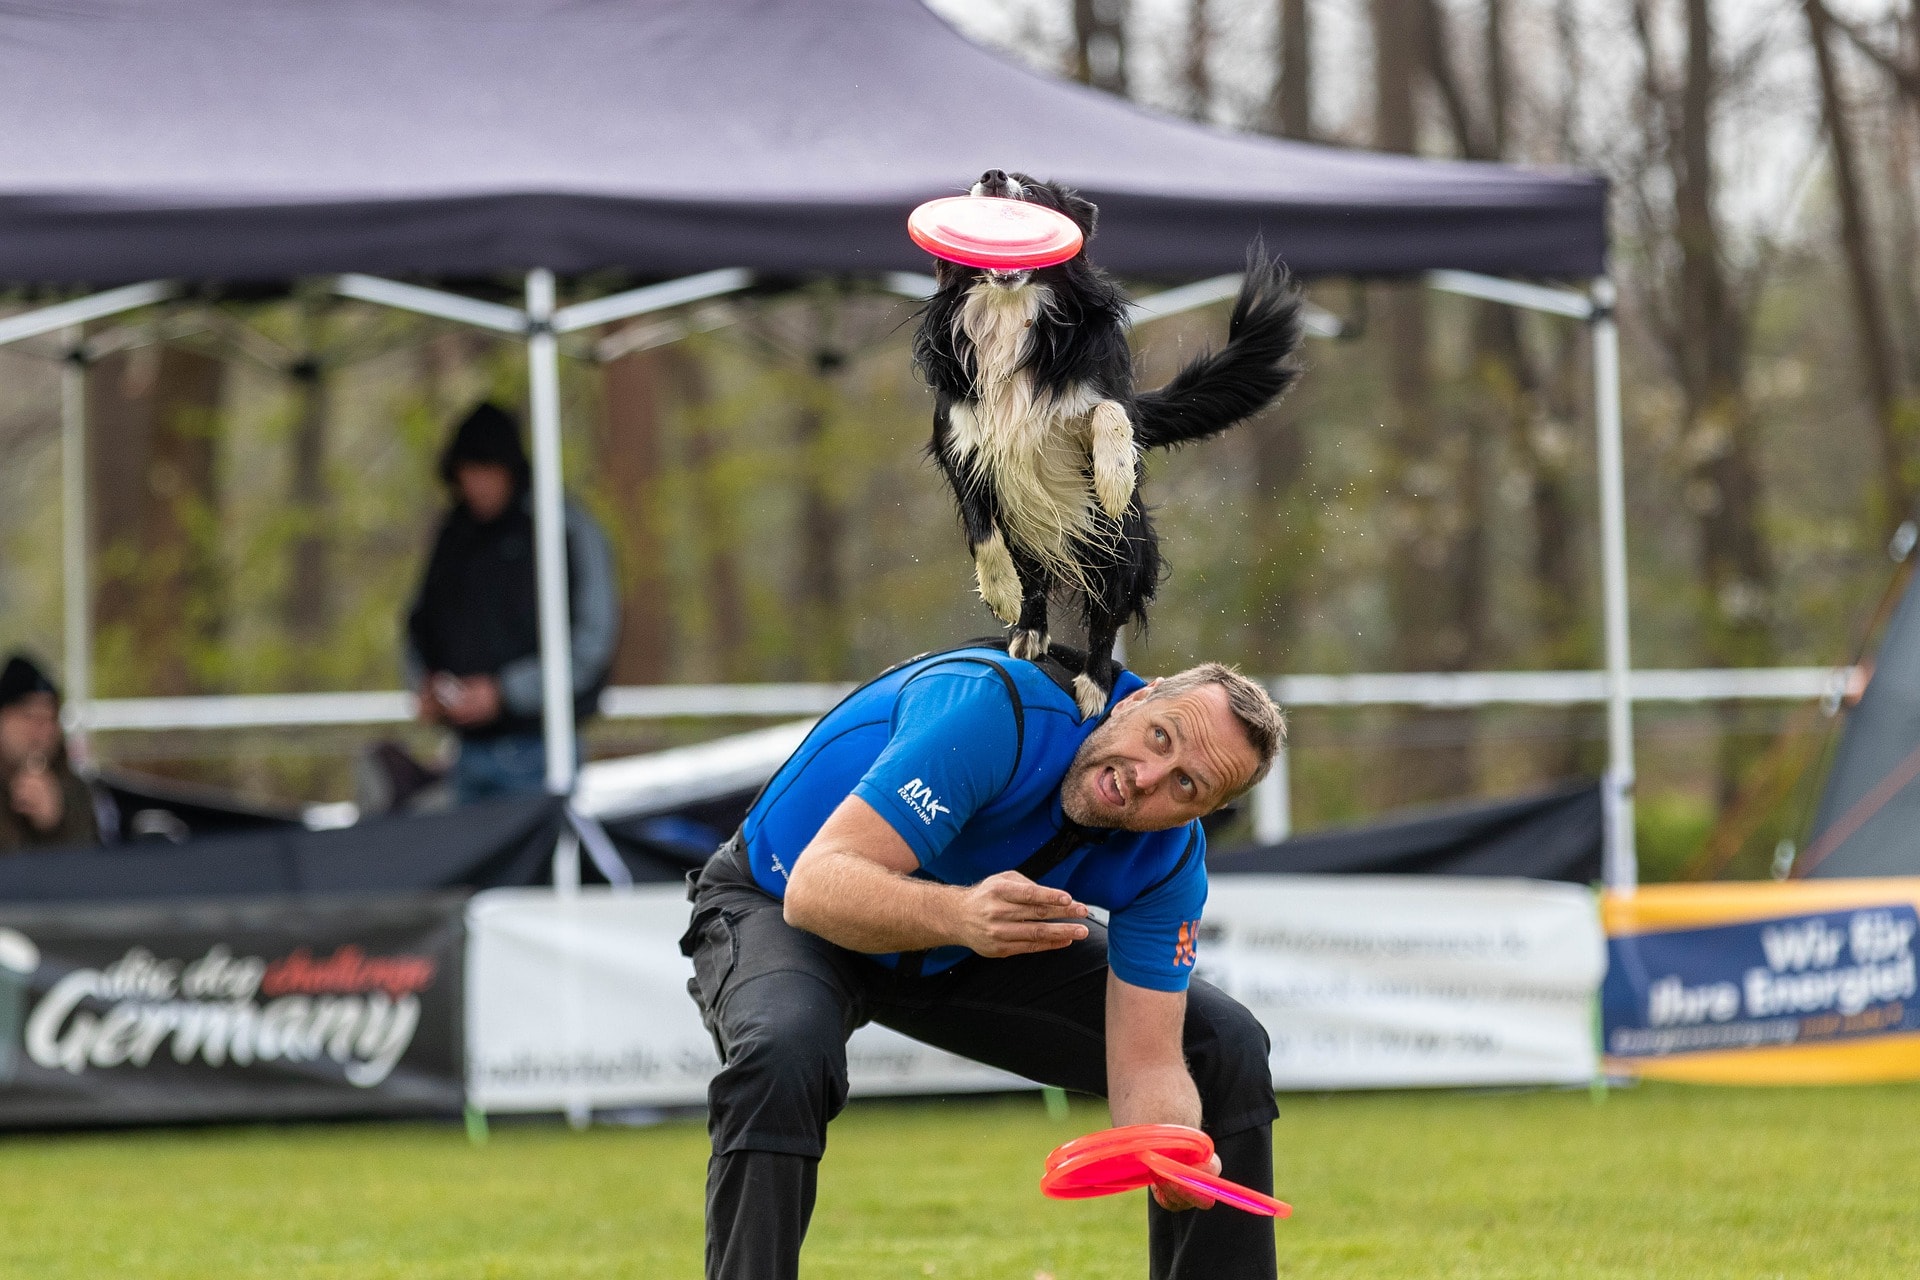 un homme participe à une compétition de frisbee avec son chien